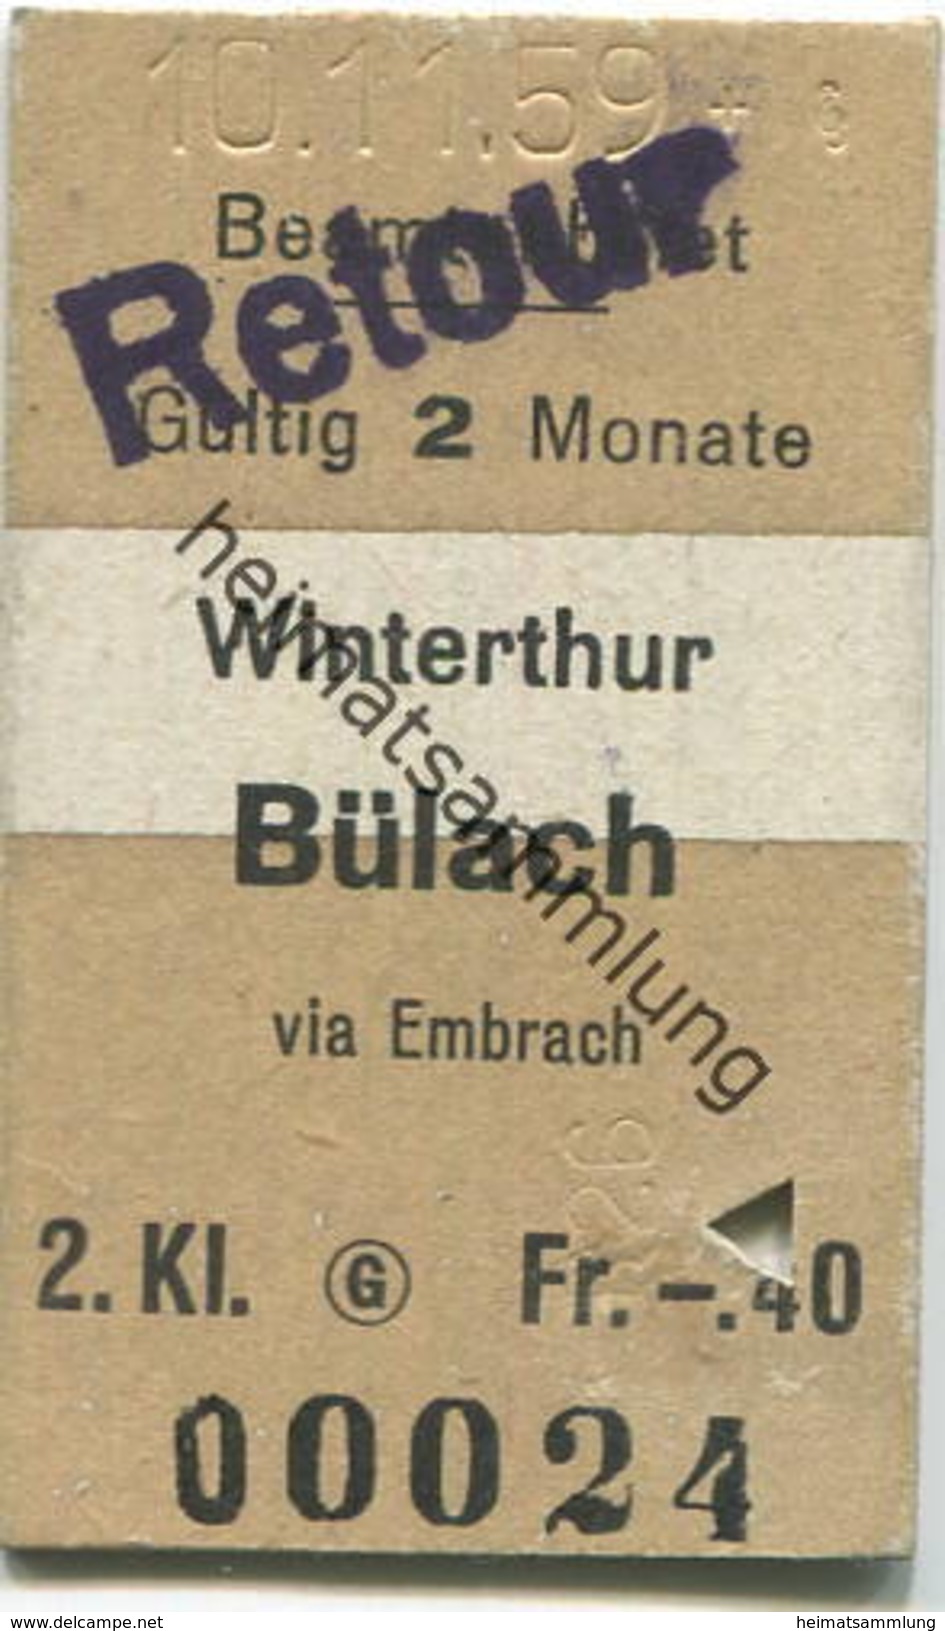 Schweiz - Beamtenbillet - Winterthur Bülach Stempel Retour - Fahrkarte 2. Kl. 1959 - Europe